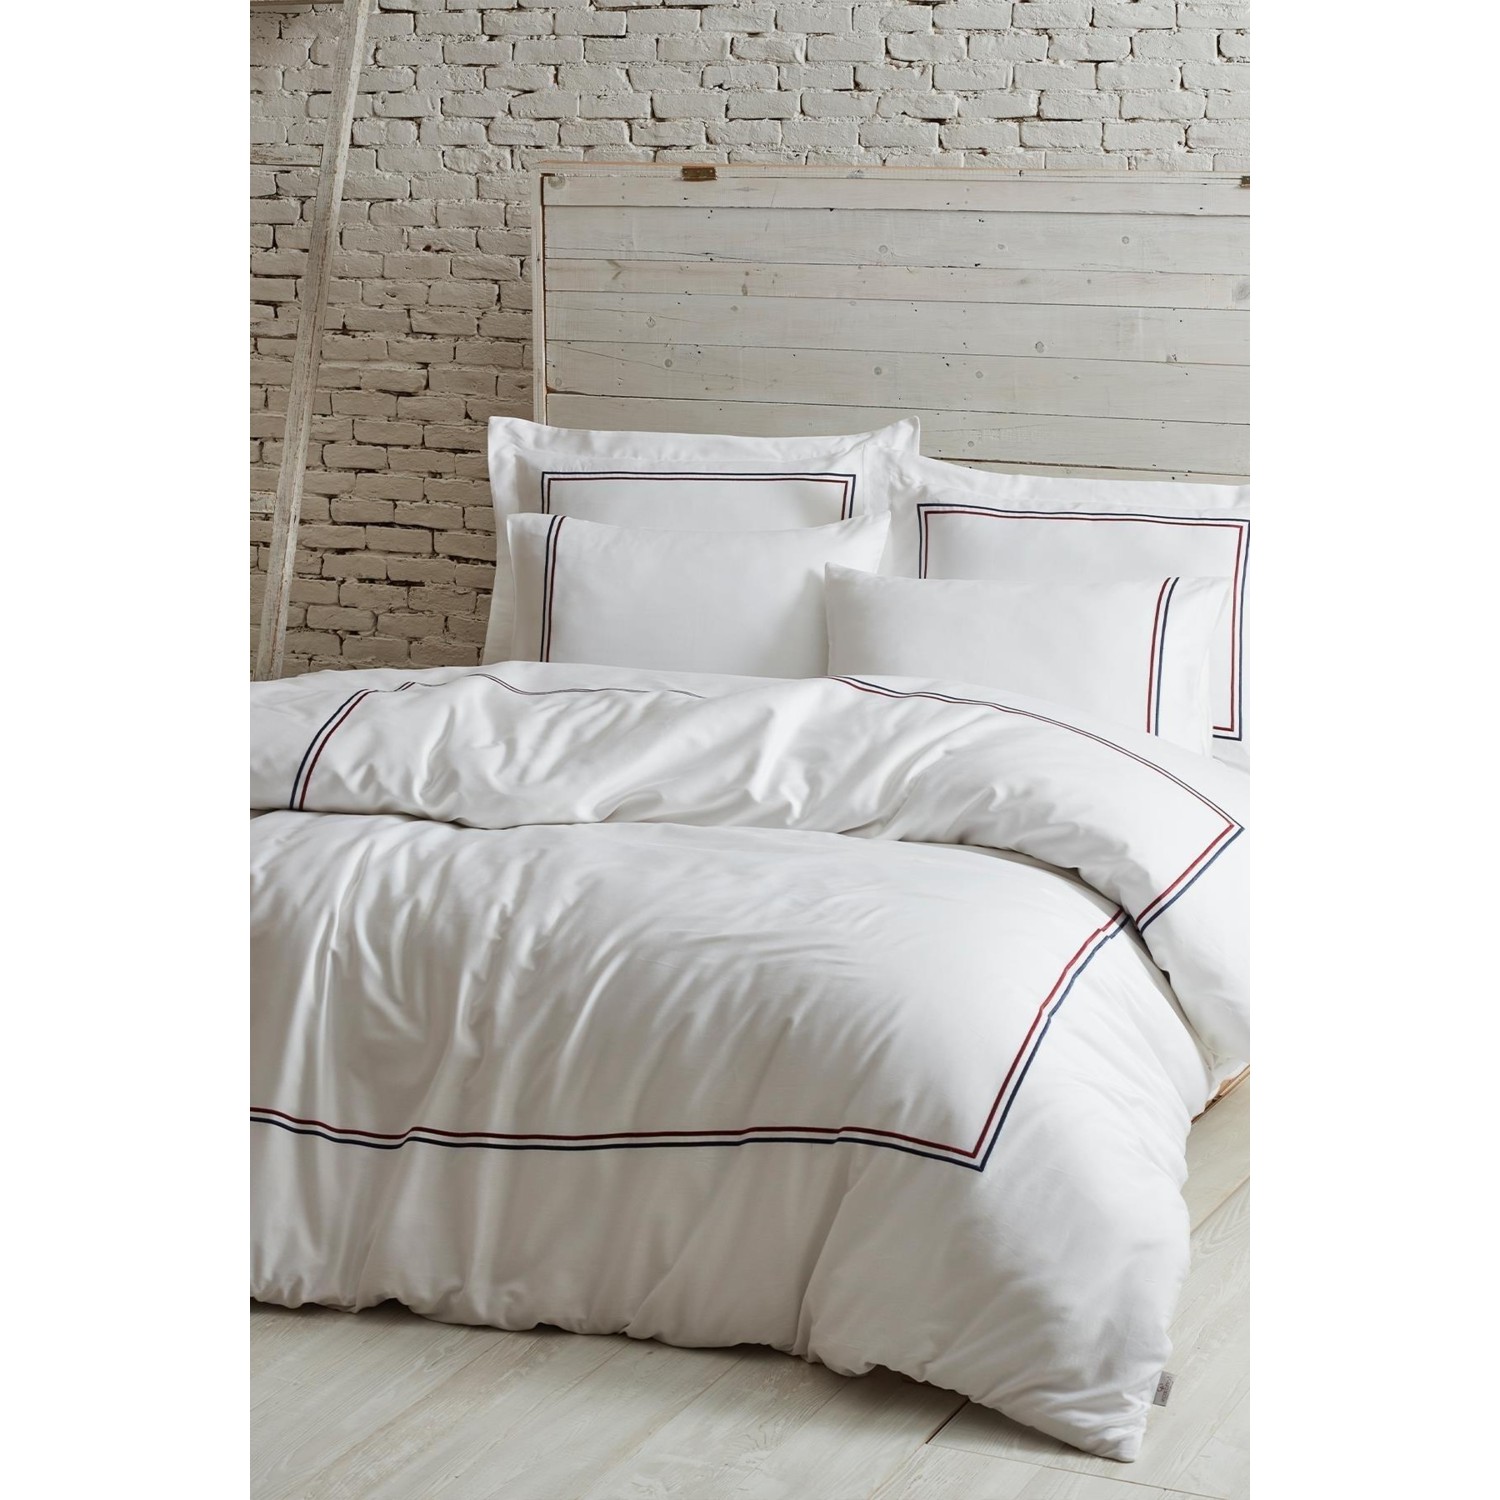 Ecocotton Line Комплект постельного белья королевского размера из 100% органического хлопка, атласа с вышивкой, белого цвета, 220X240 см